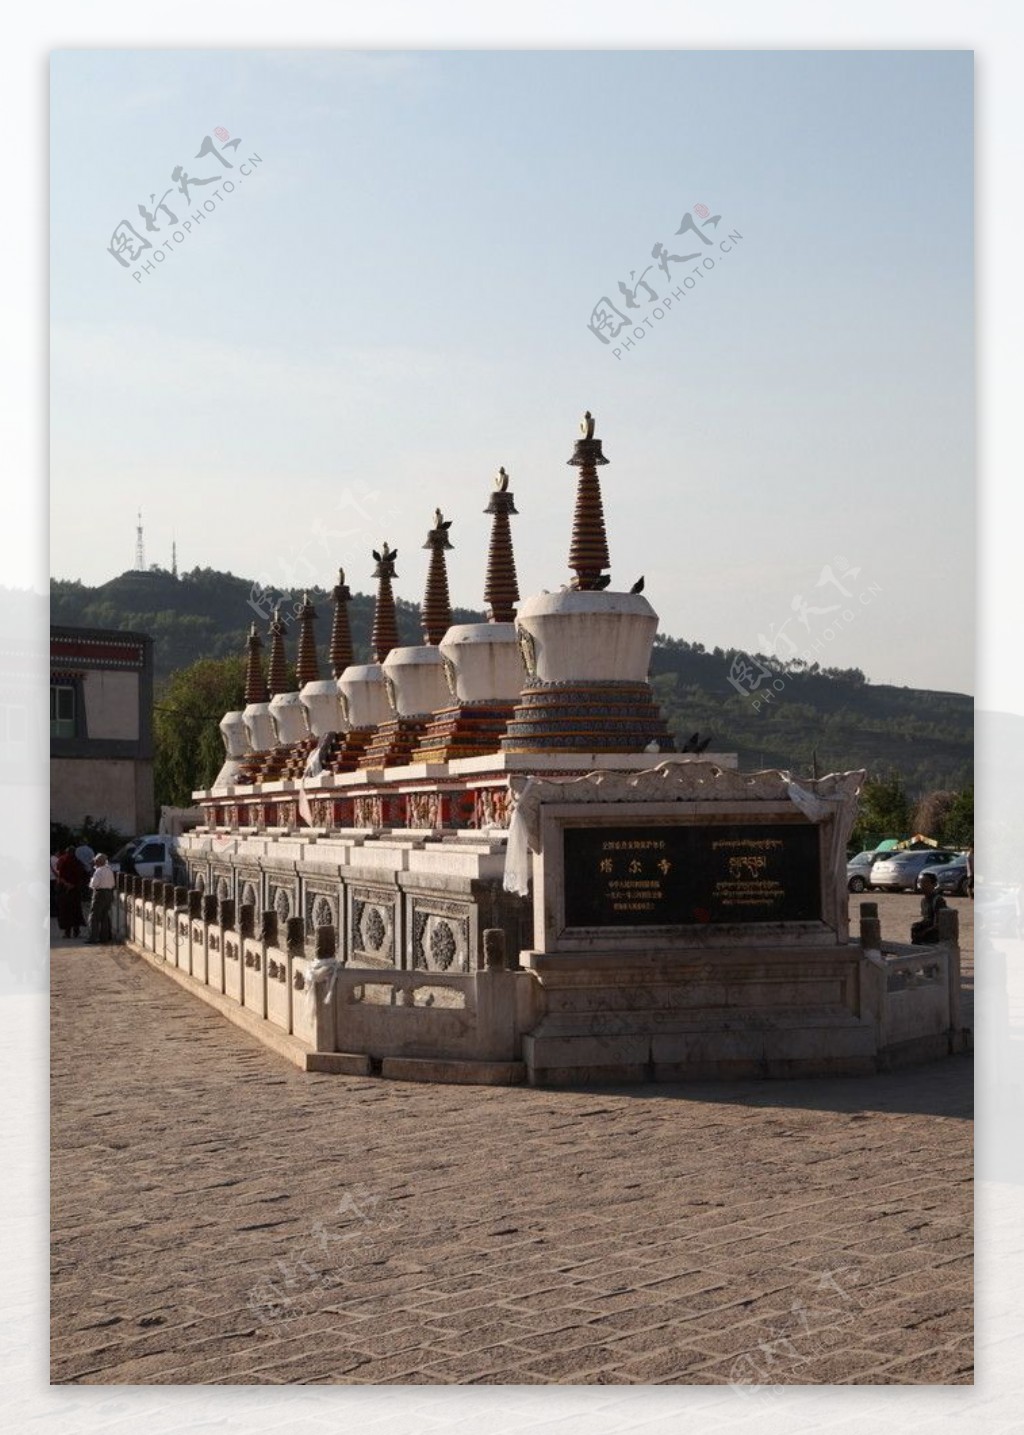 青海塔尔寺图片